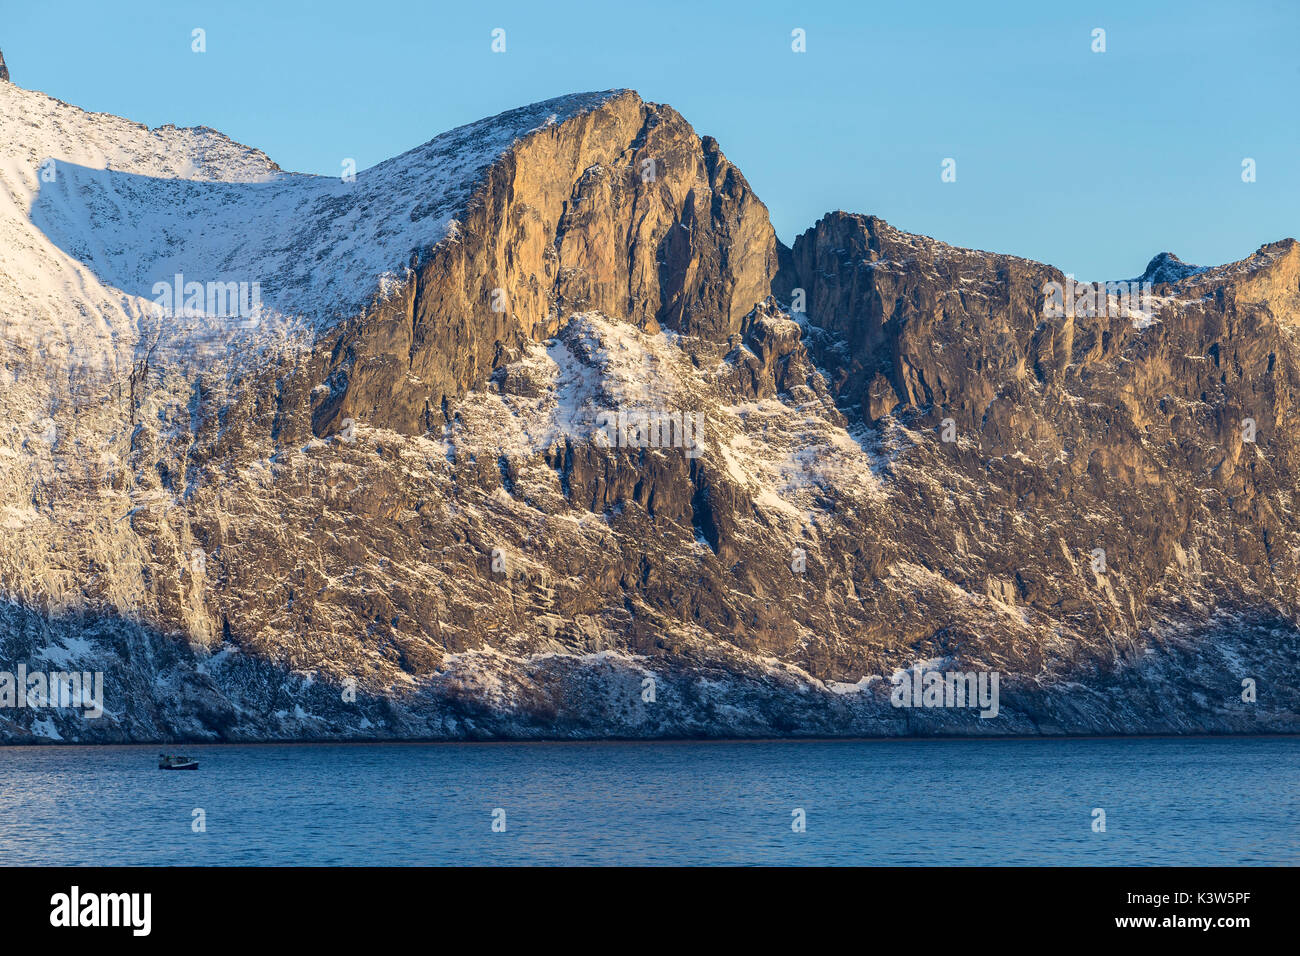 Barca da pesca di vele in Mefjorden con imponenti pareti di roccia dietro di esso. Mefjordvaer, Mefjorden, Senja, Norvegia, l'Europa. Foto Stock